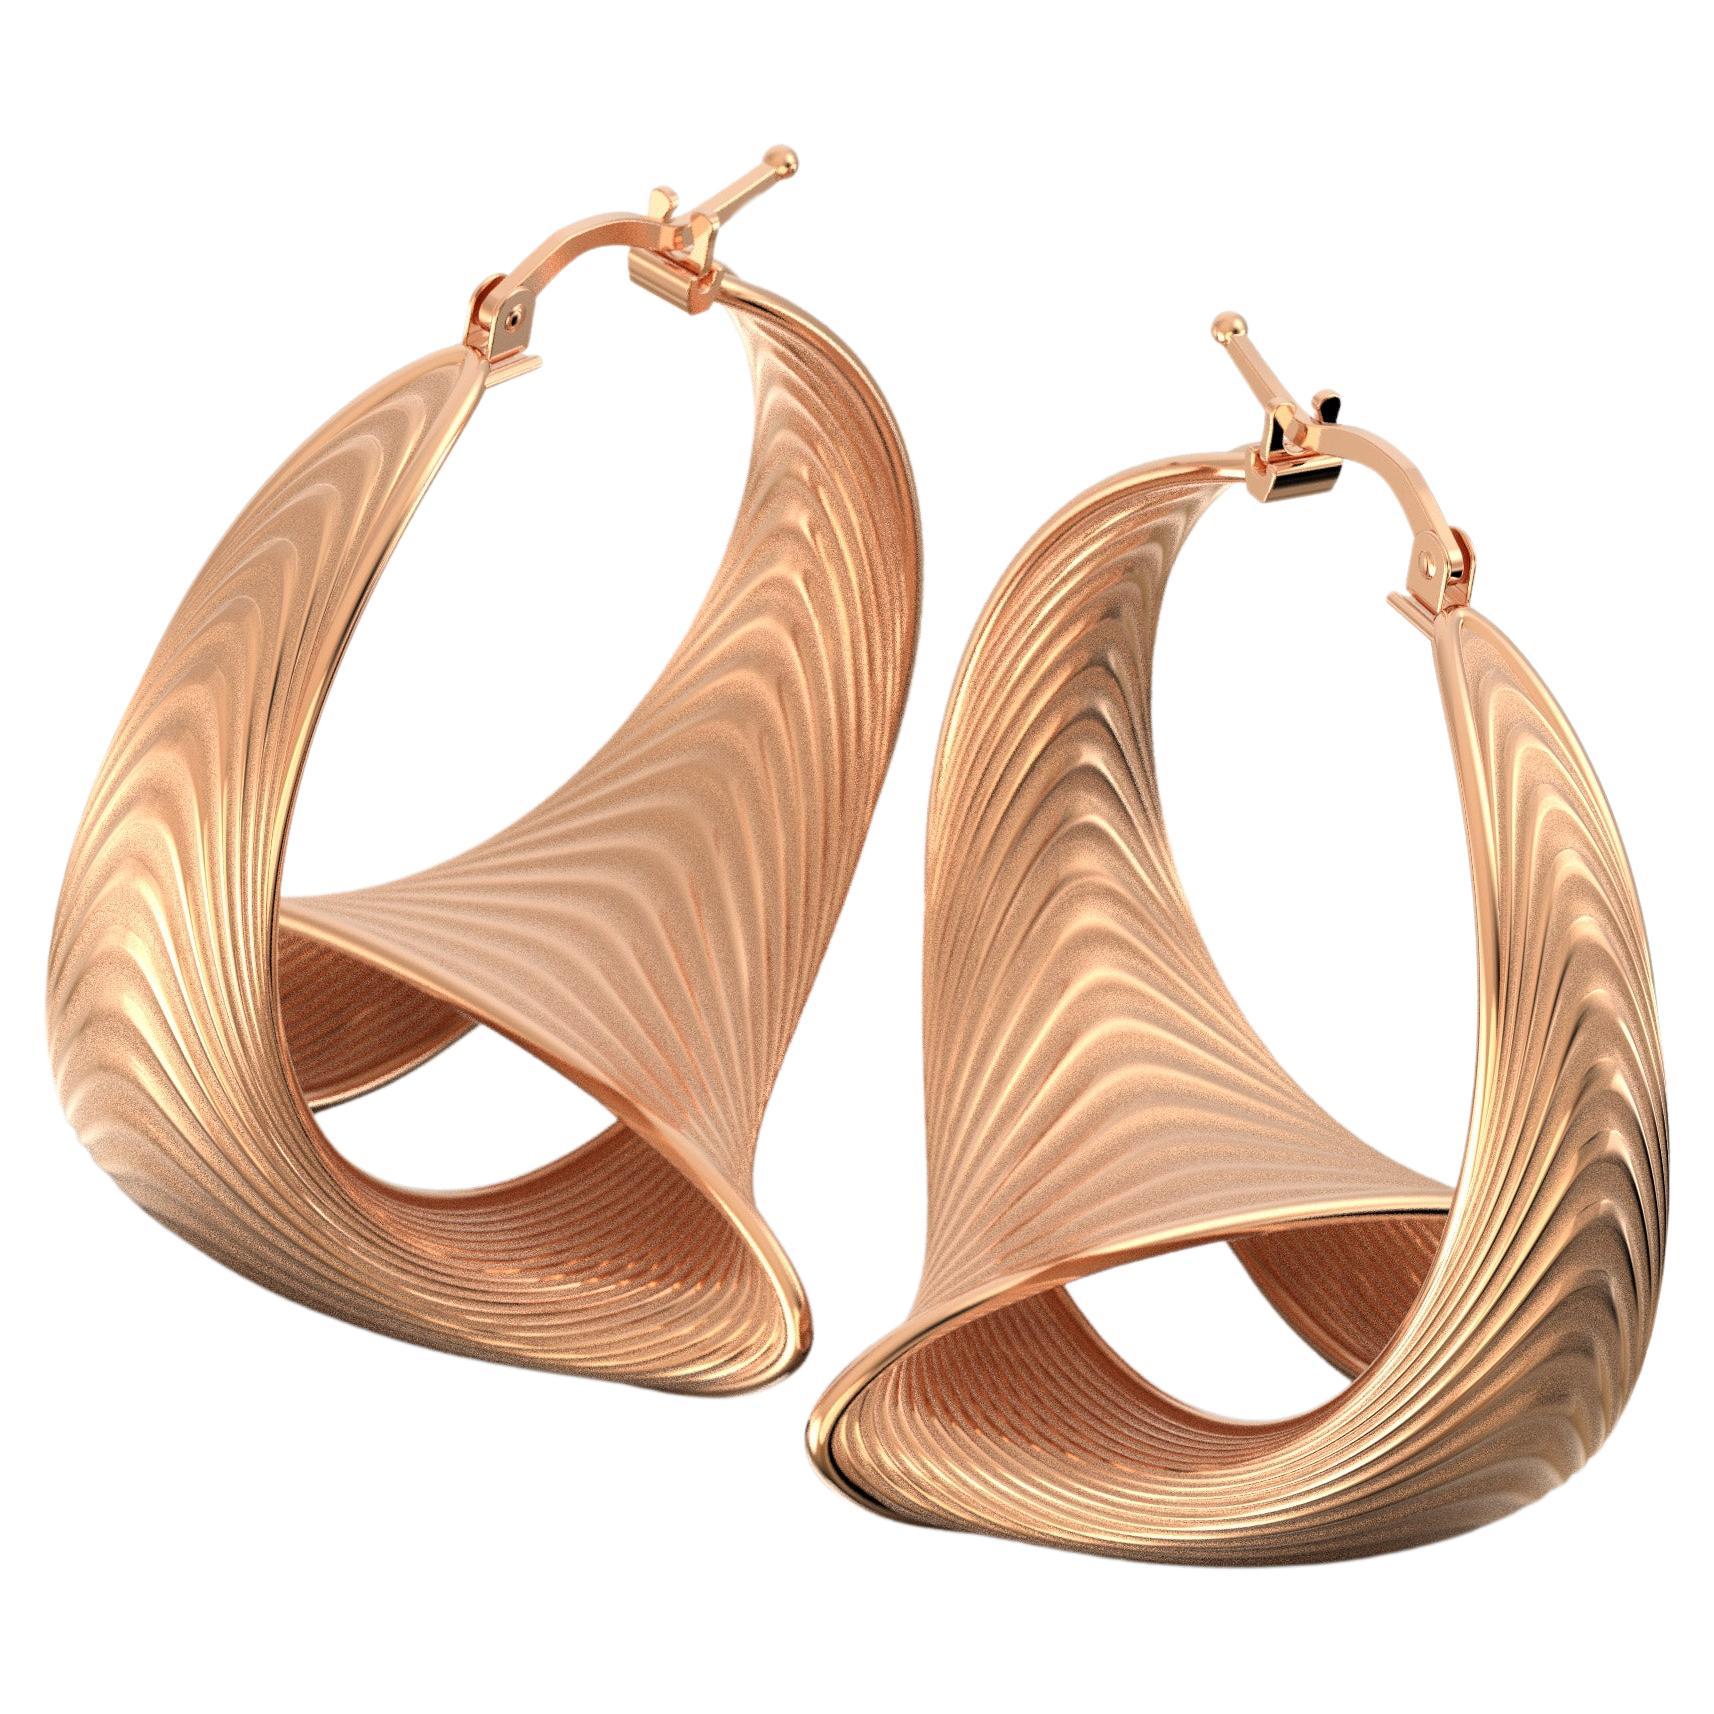 Entdecken Sie zeitlose Eleganz mit unseren auf Bestellung gefertigten großen Ohrringen mit 33 mm Durchmesser. Diese modernen, in Italien von Oltremare Gioielli handgefertigten Ohrringe aus 14-karätigem Gold strahlen Raffinesse aus. Erhöhen Sie Ihren